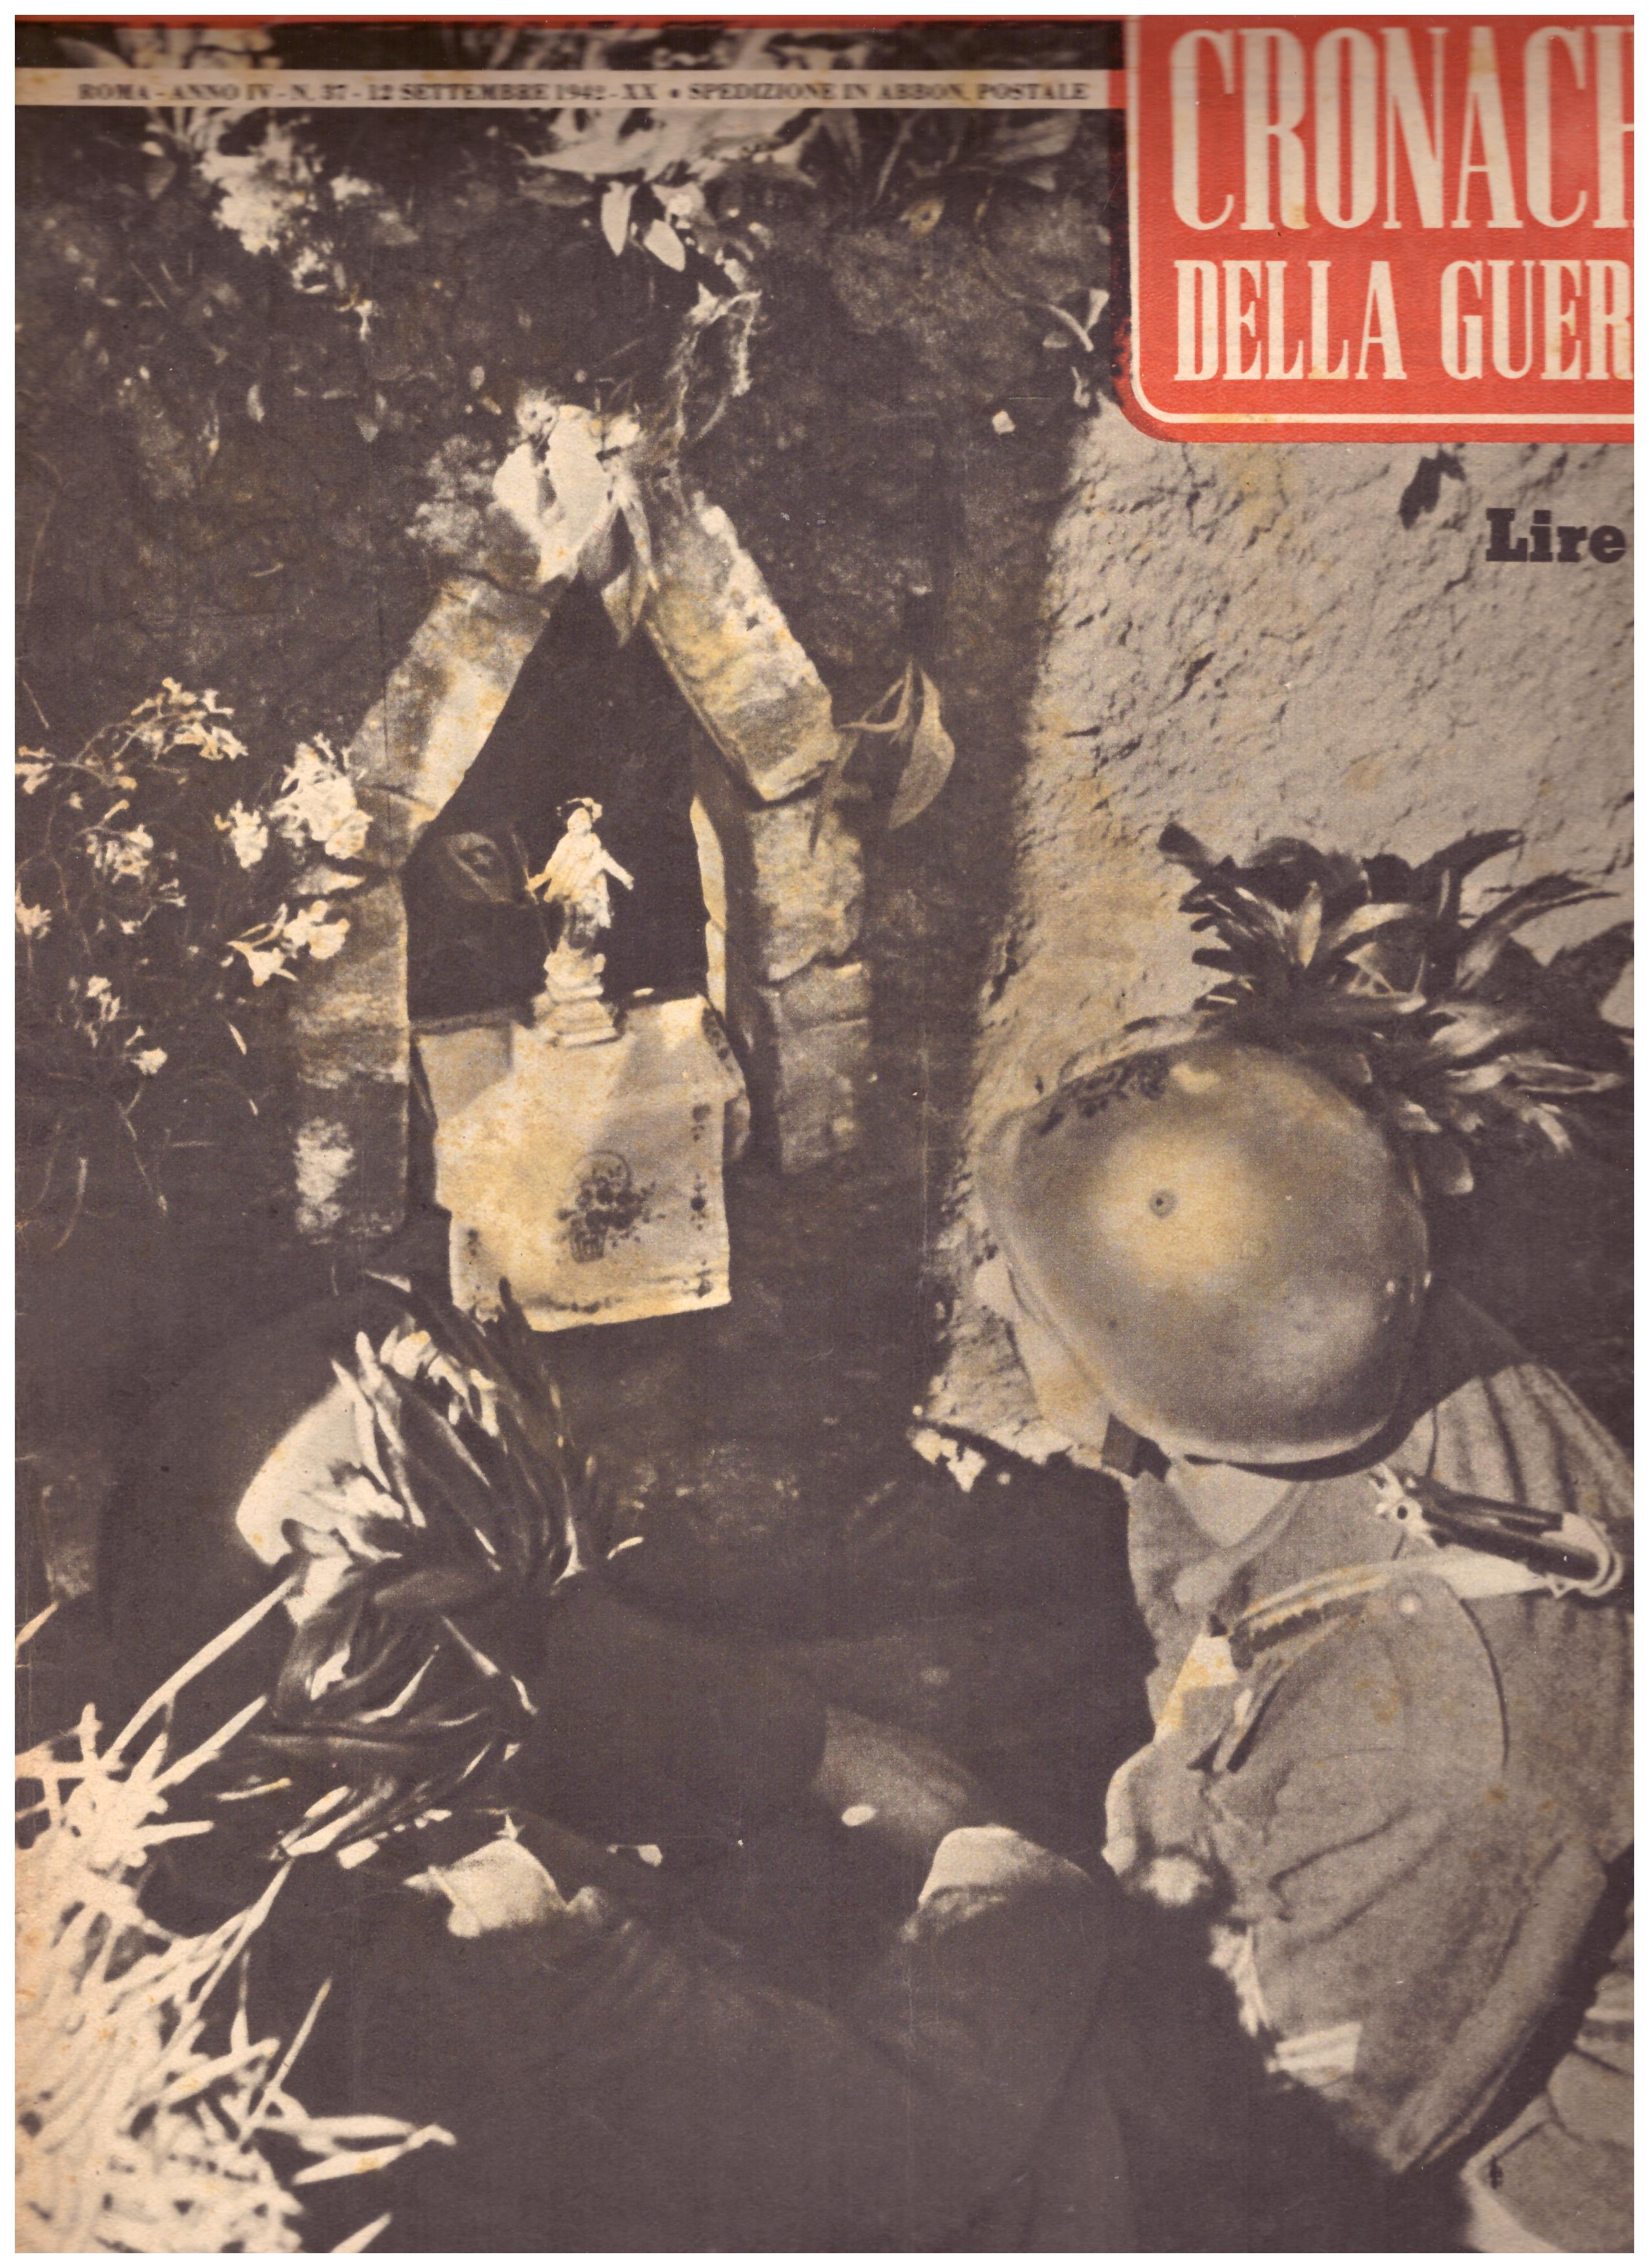 Titolo: Cronache della guerra, Roma Anno IV N.37 12 settembre 1942  Autore : AA.VV.   Editore: Tumminelli editore Roma